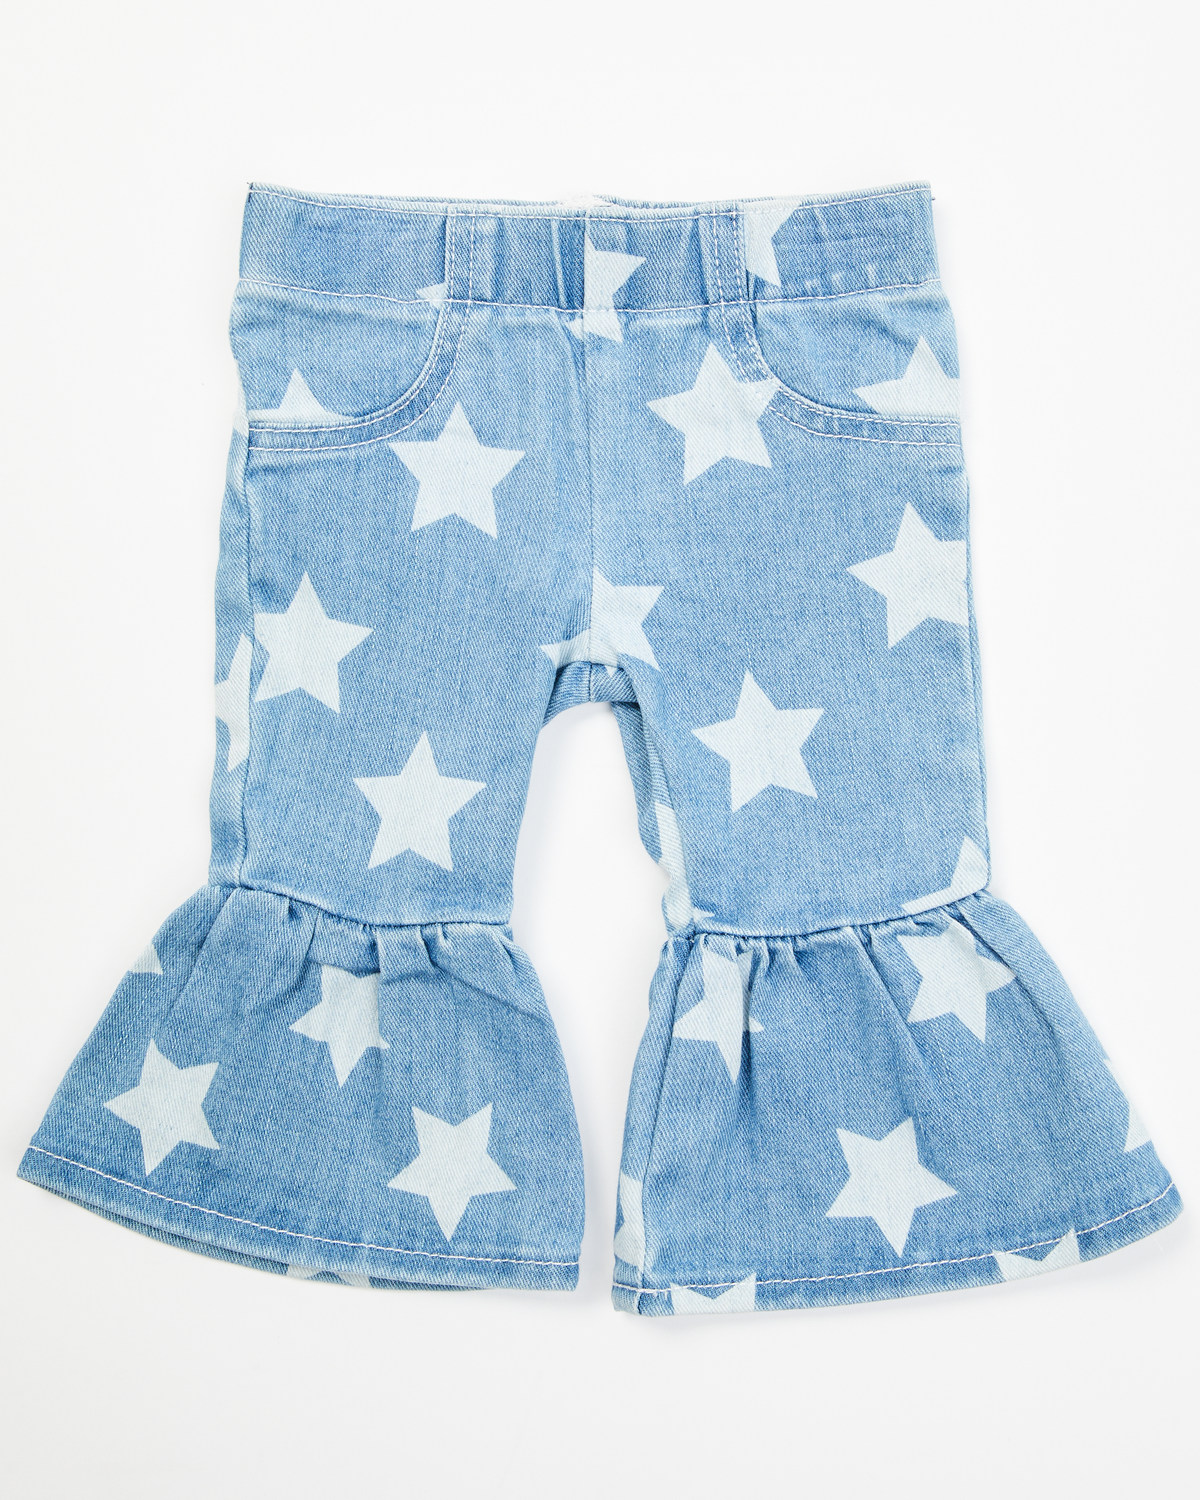 Wrangler Infant Girls' Star Print Flare Jeans